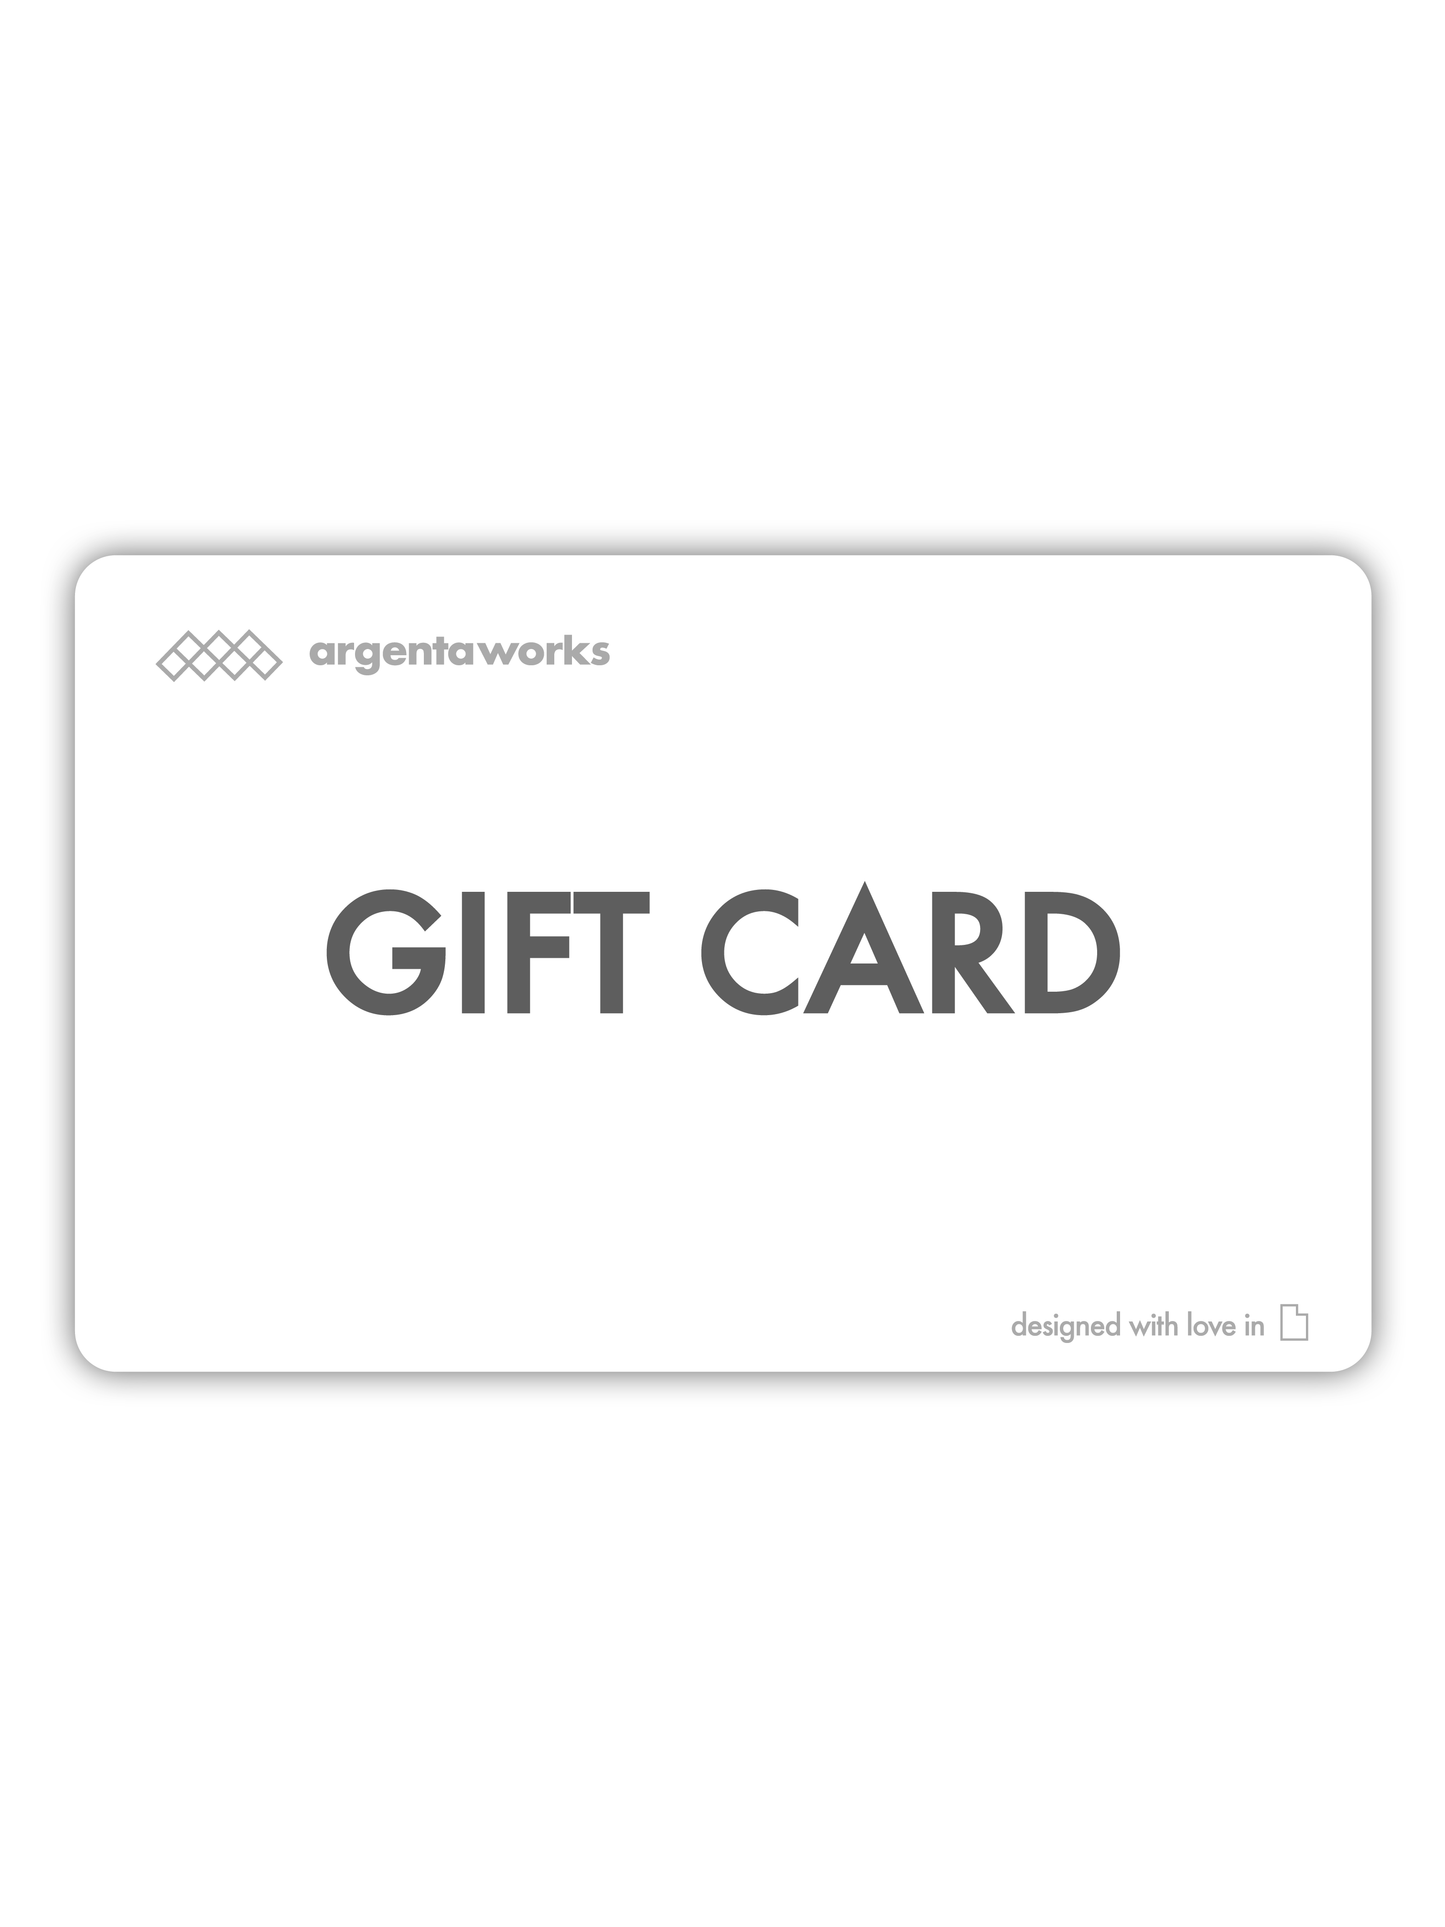 ArgentaWorks Gift Card